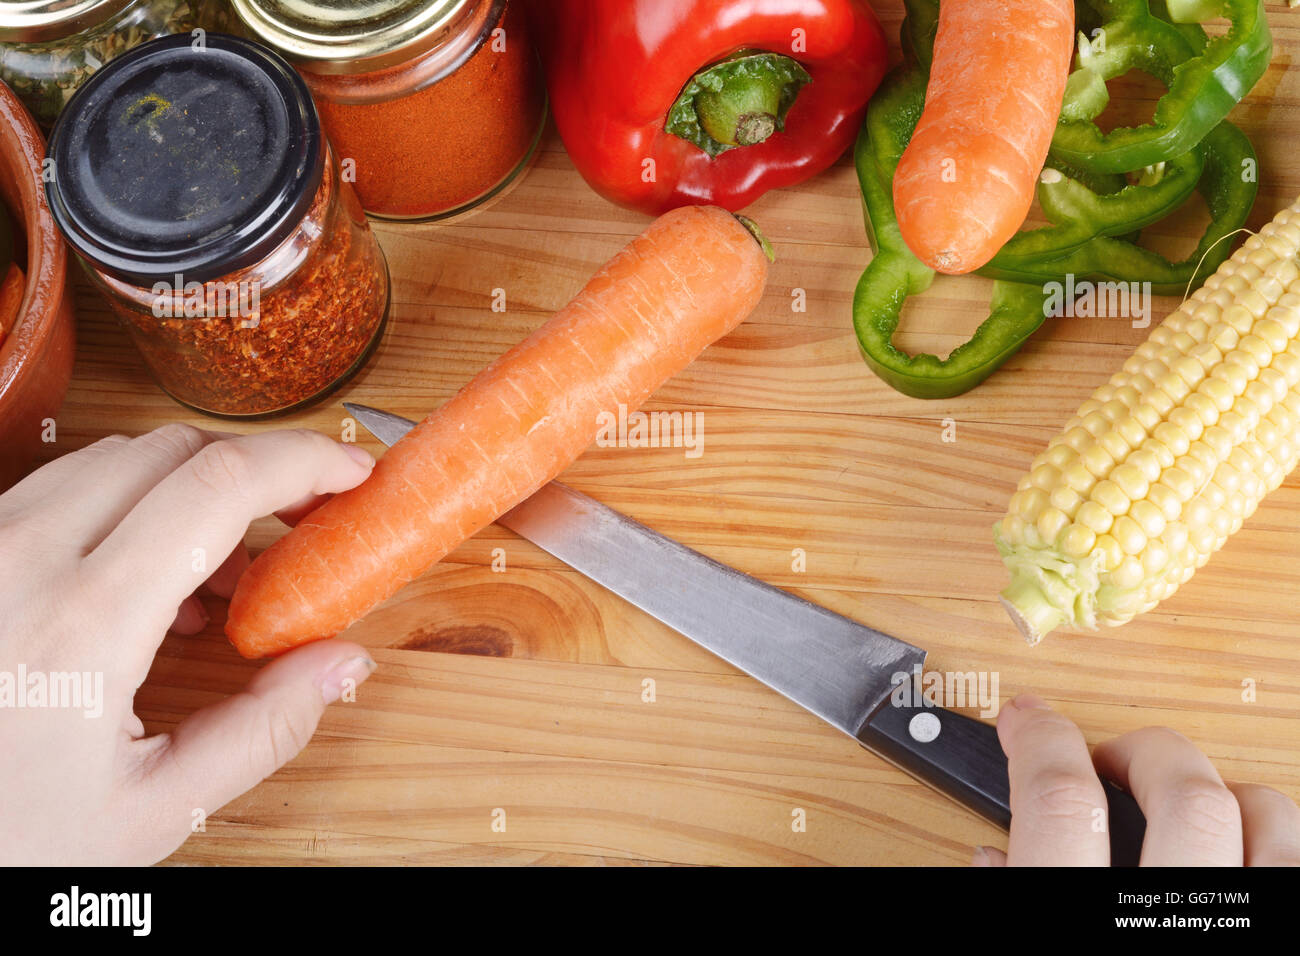 Persona il taglio di una carota sul tavolo di legno con spezie e verdure. Cibo sano concetto. Foto Stock